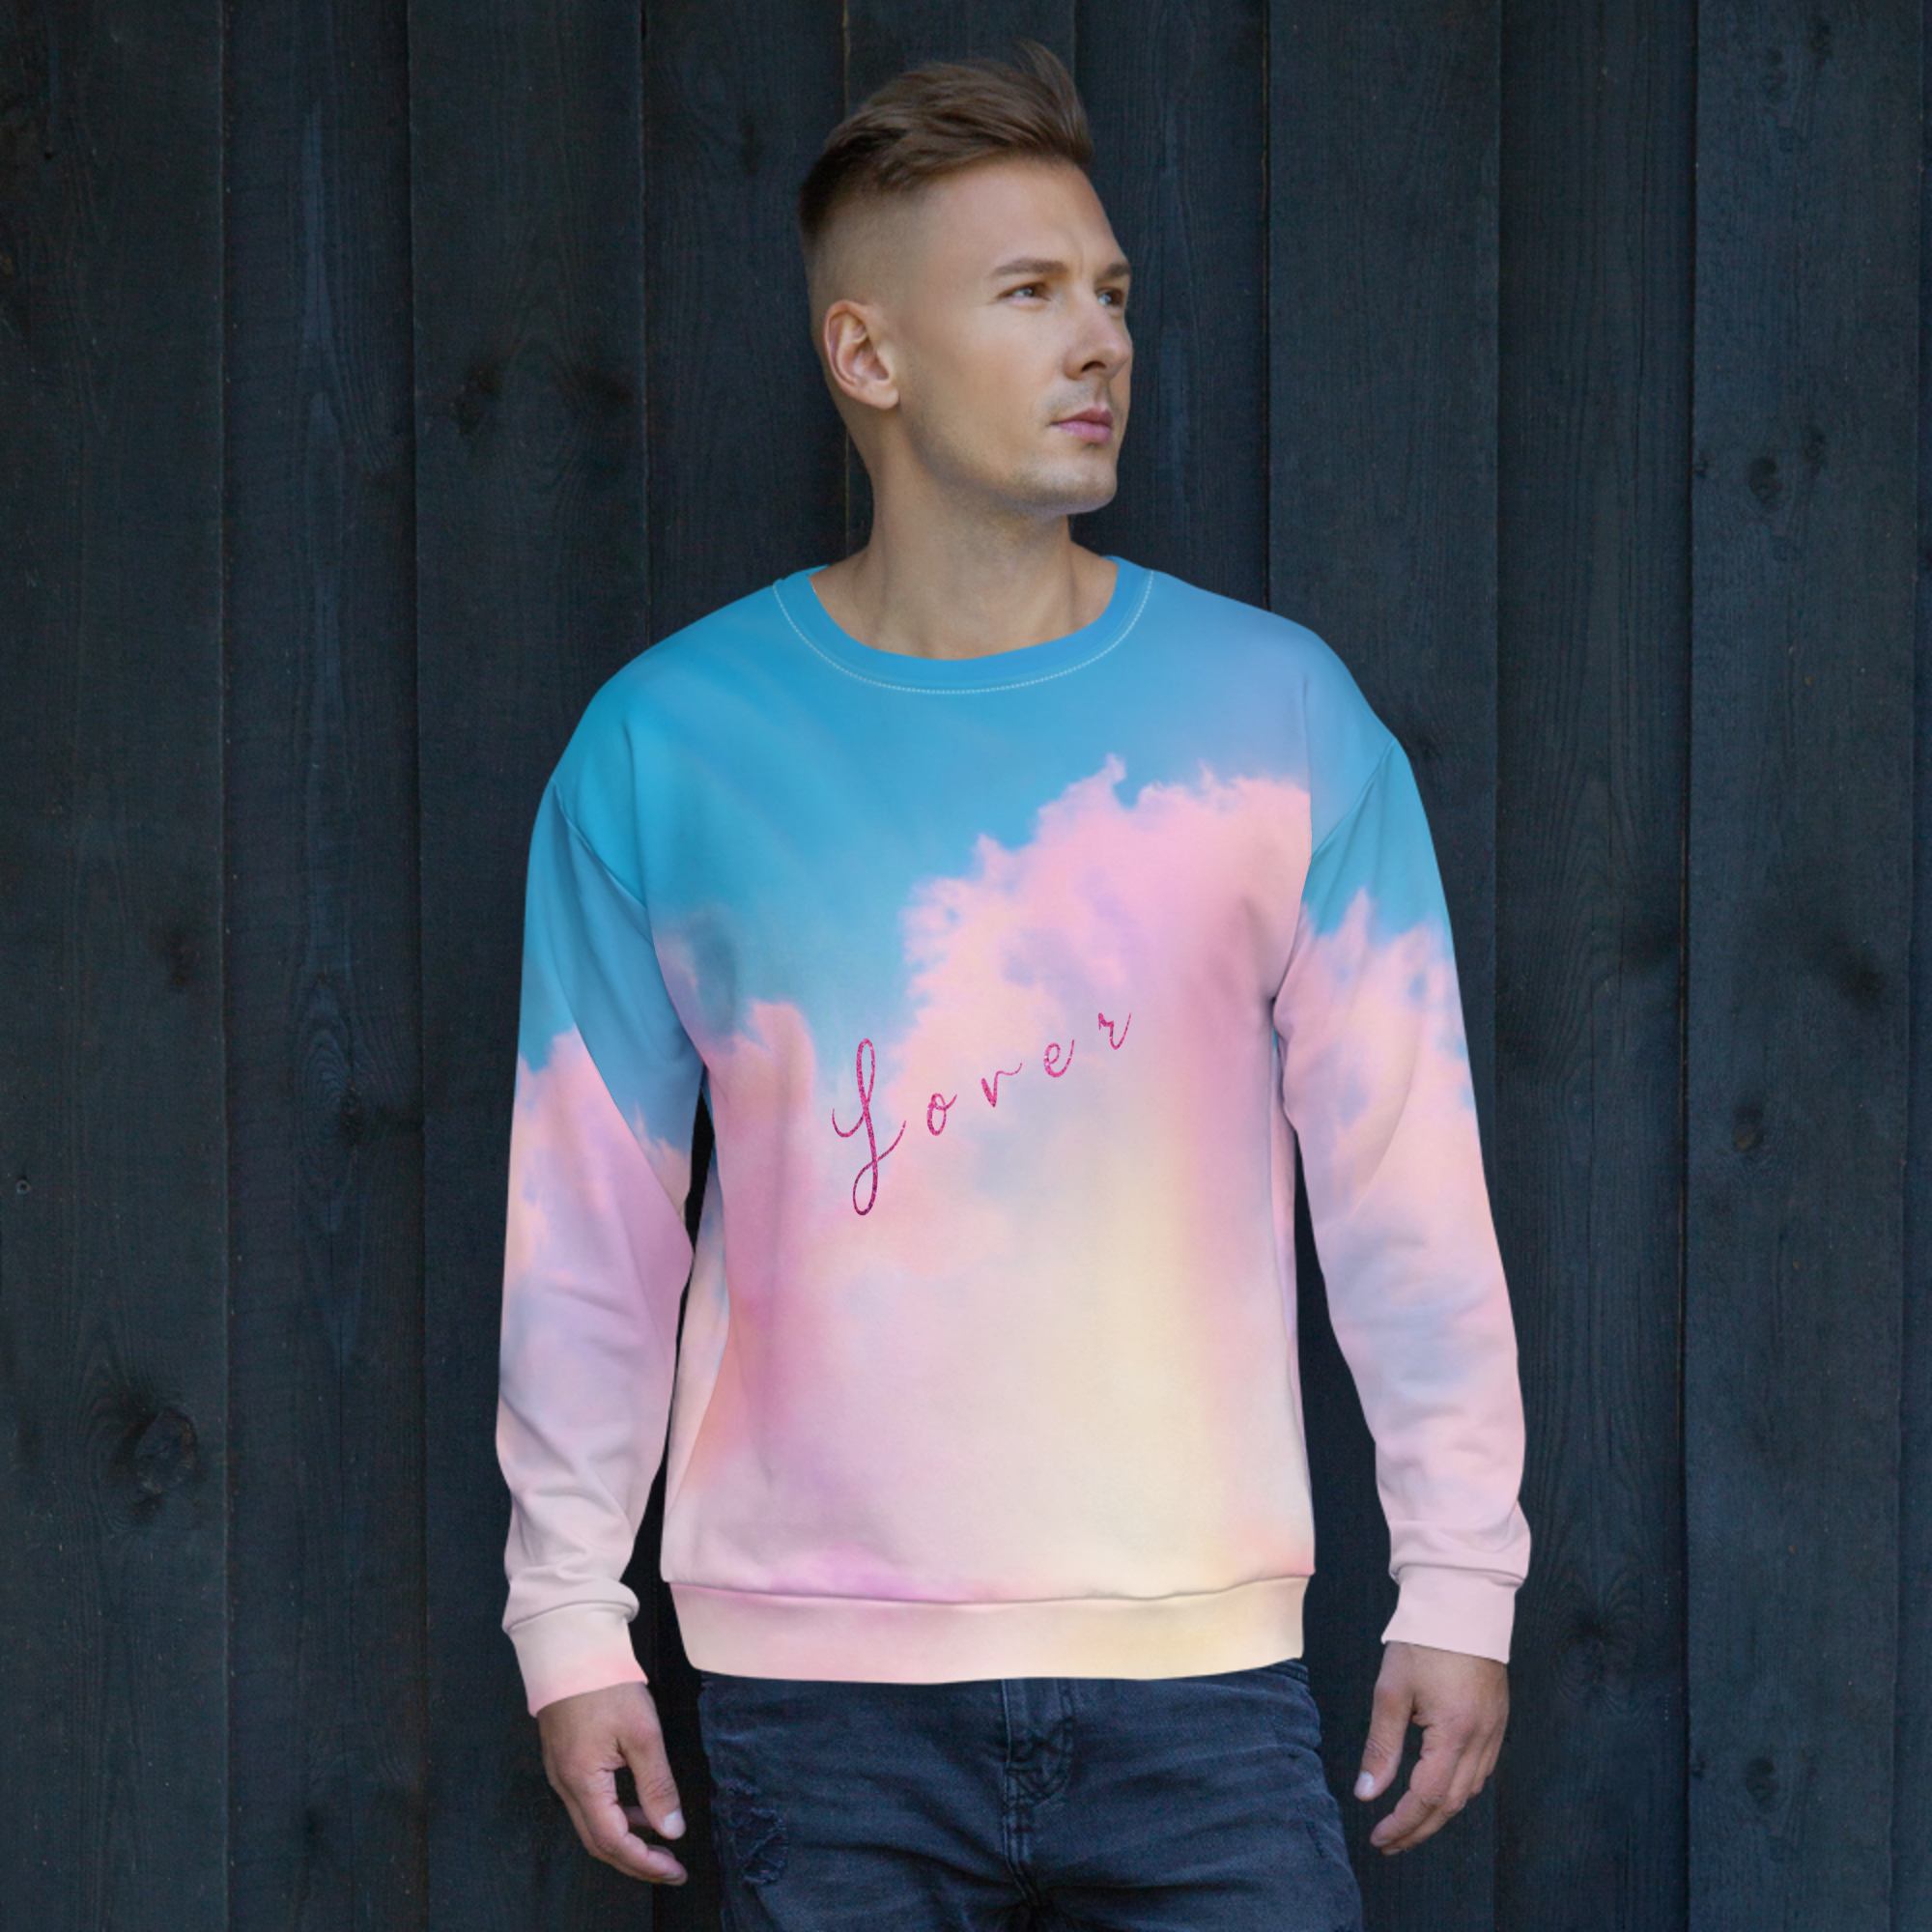 Taylor Swift Lover Inspired Sweatshirt (The Heartbreak Prince) Jersey Style